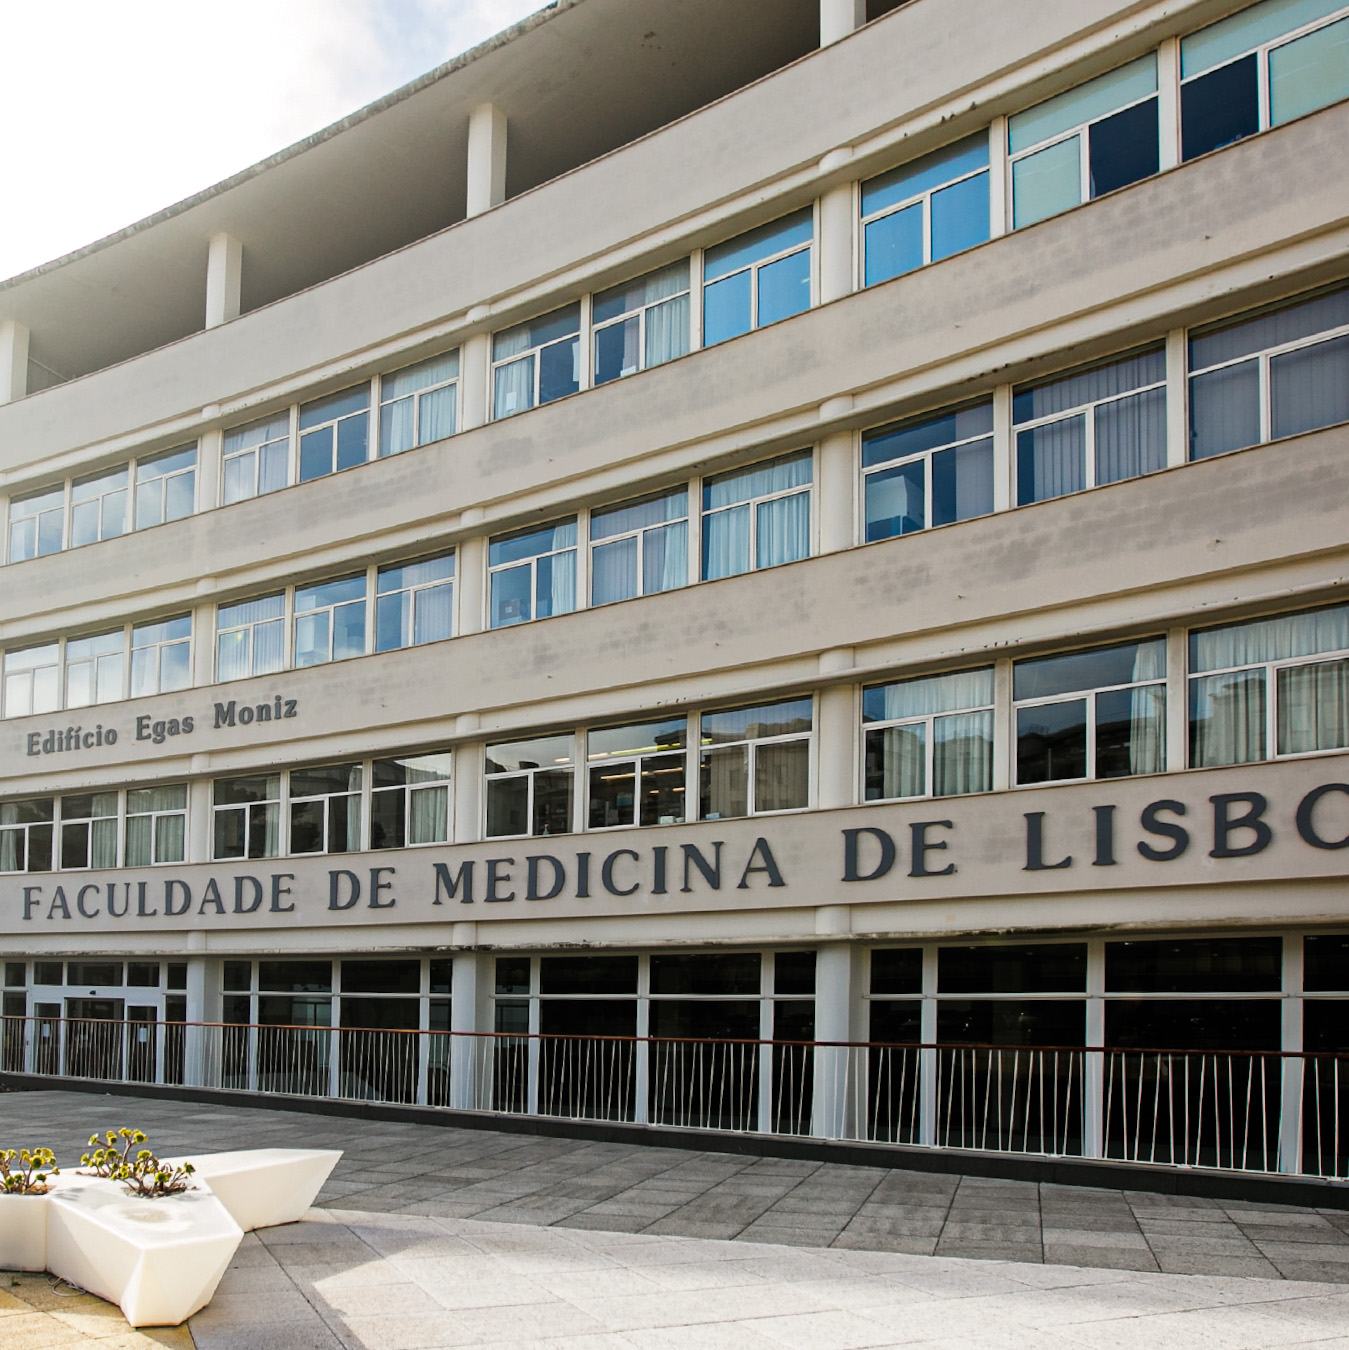 Instituto de Formação Avançada da Faculdade de Medicina de Lisboa